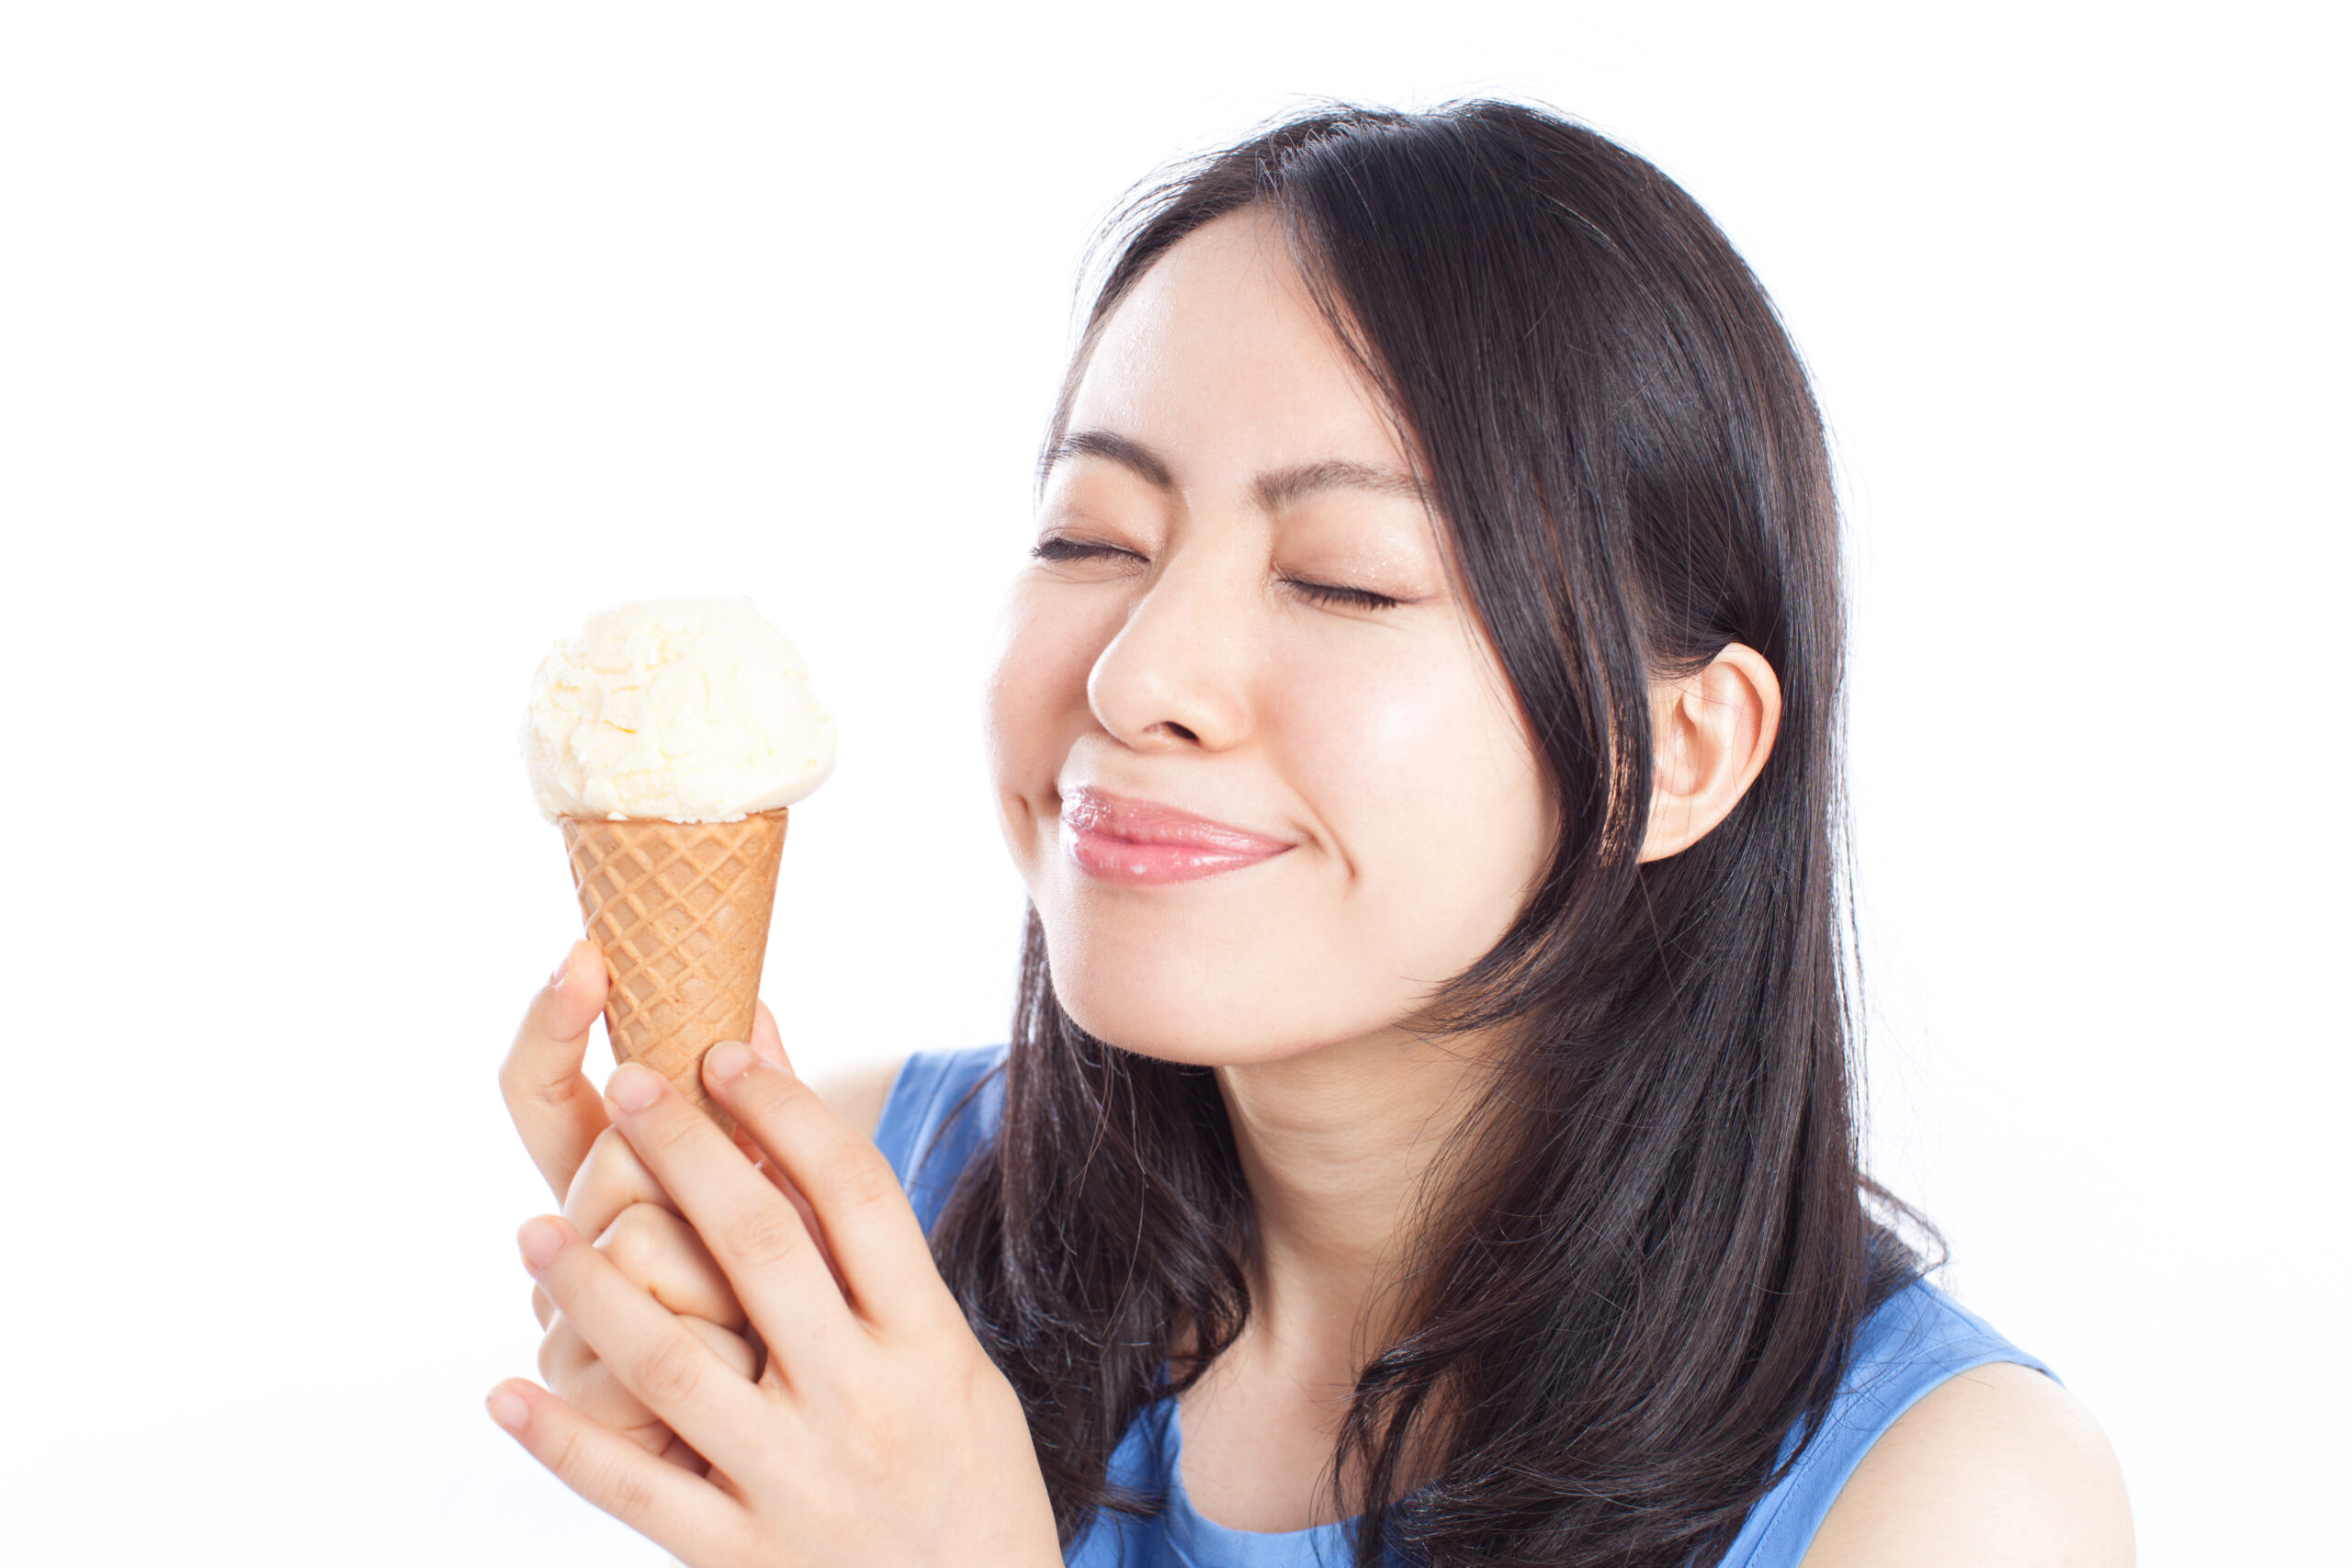 妊婦でもアイスok 食べるときのポイントや注意すべきアイスの味を紹介 Fam S Baby